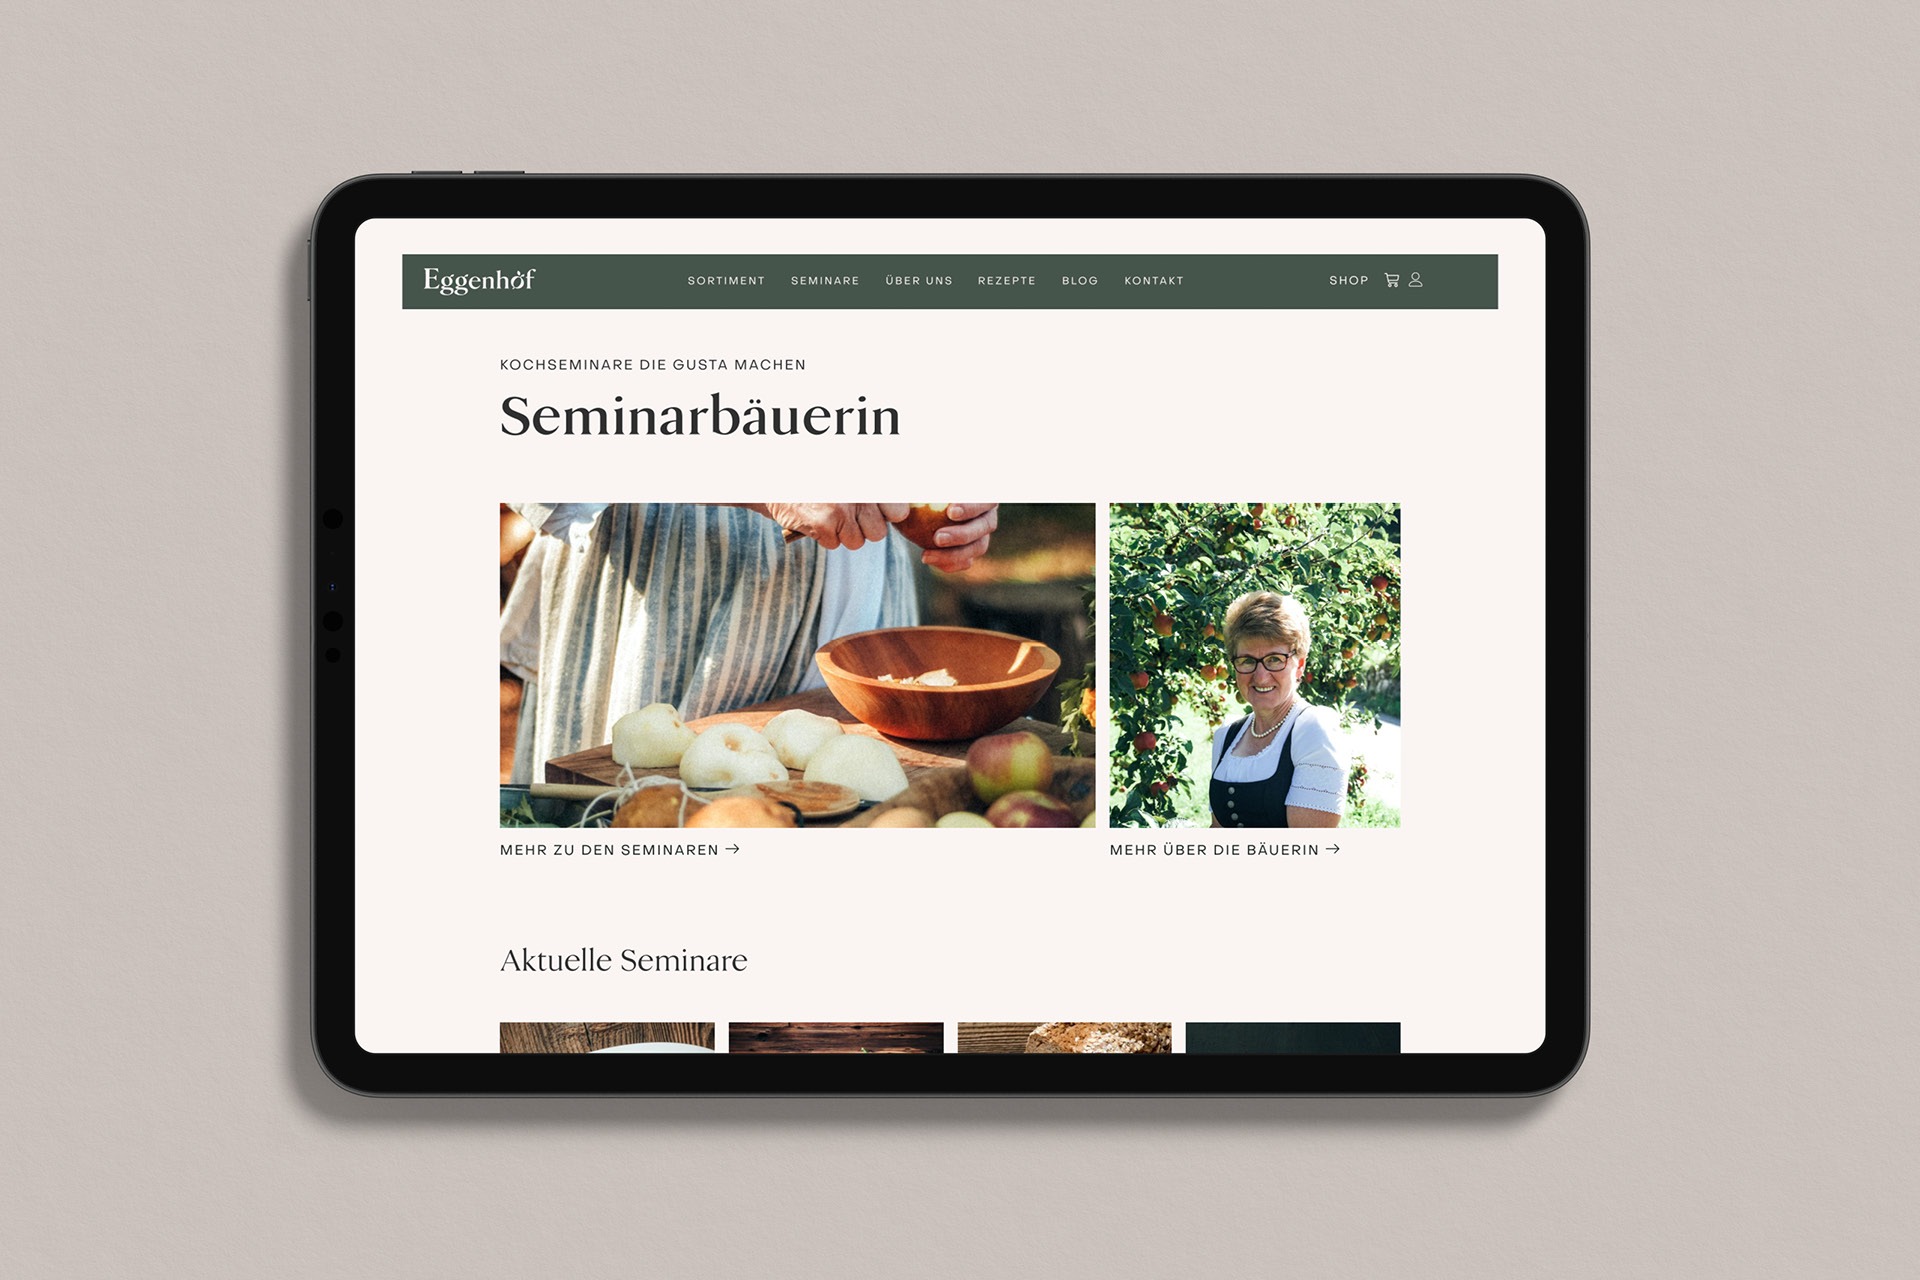 Ein Tablet, auf dem die Homepage der Eggenhof-Website angezeigt wird.